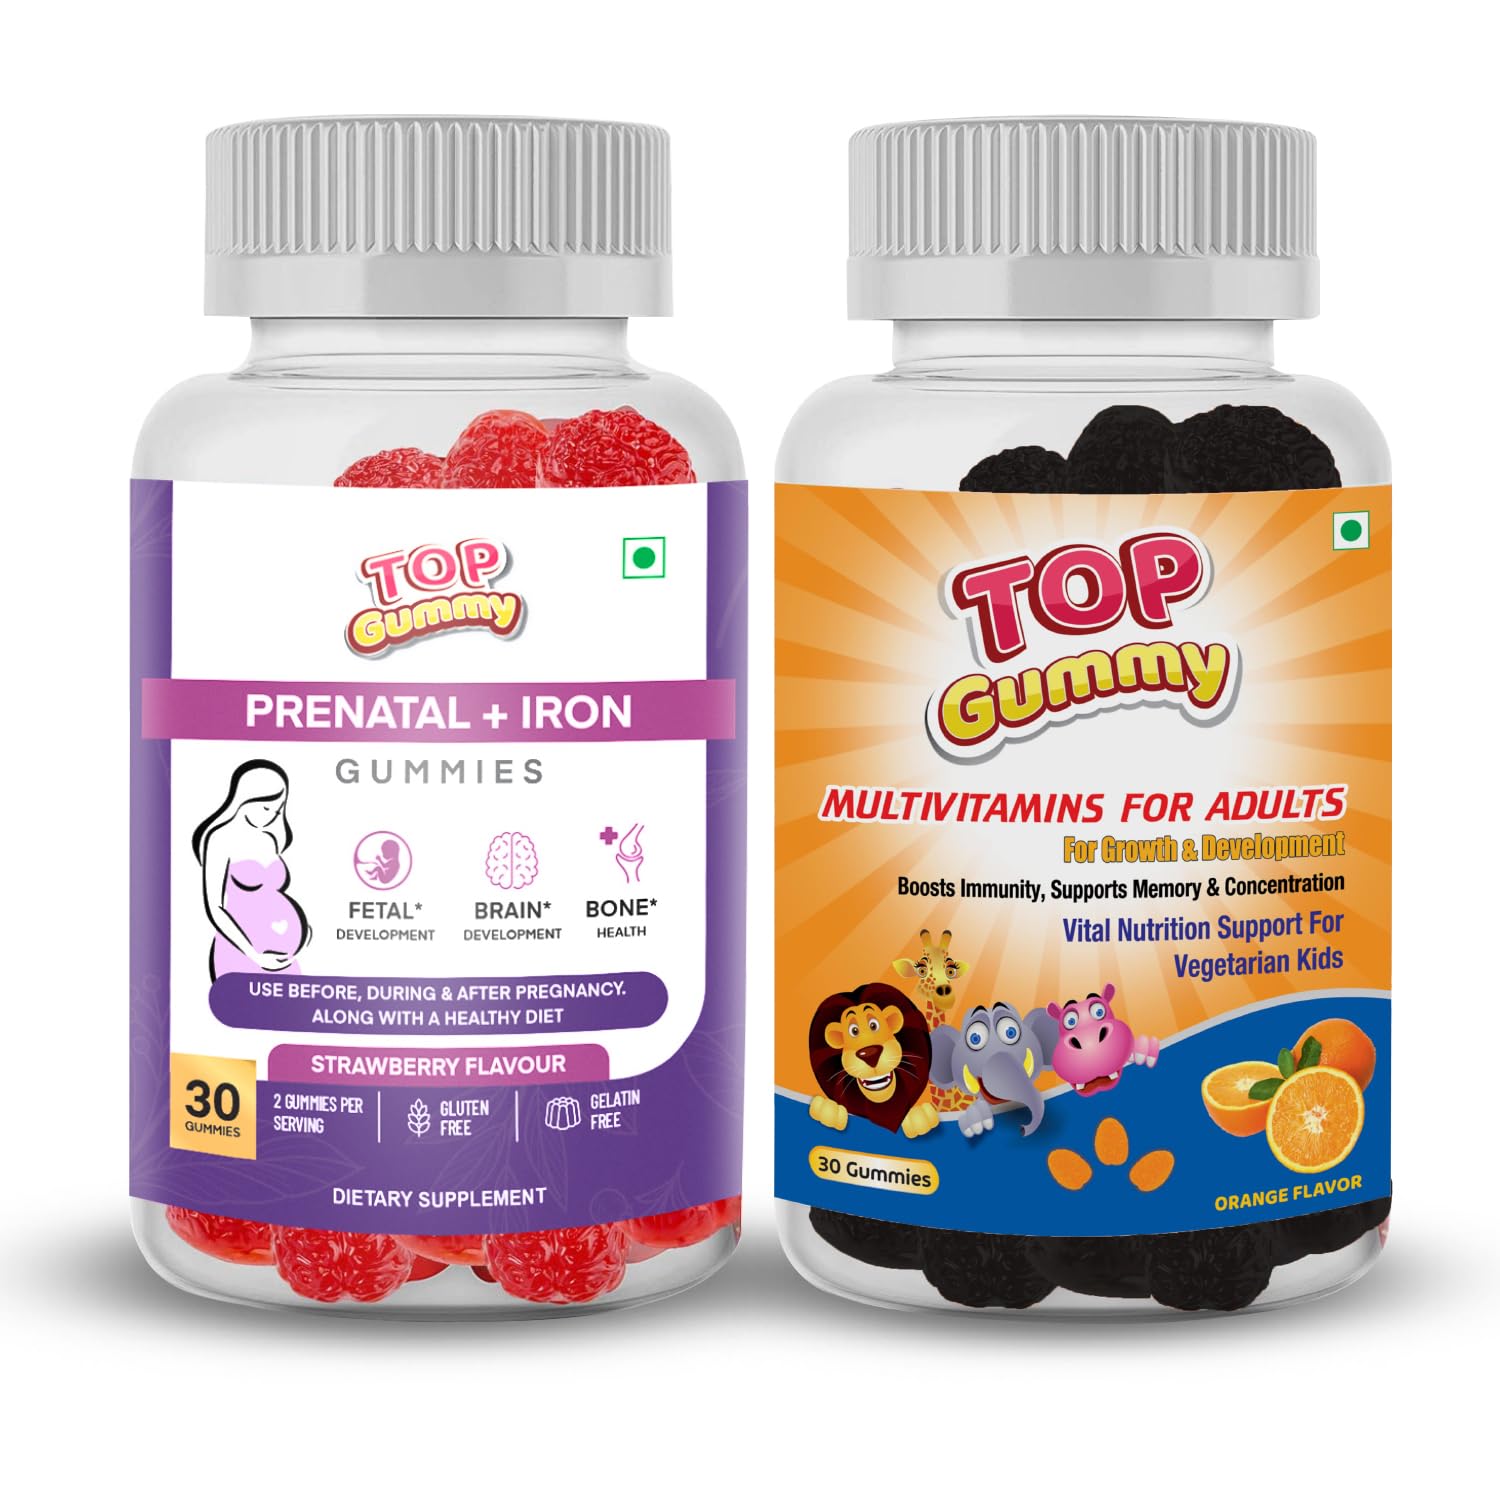 Top Gummy Prenatal Iron - 30 Gummies Strawberry Flavour & Multivitamin Gummies For Adults - 30 Gummies Orange Flavor